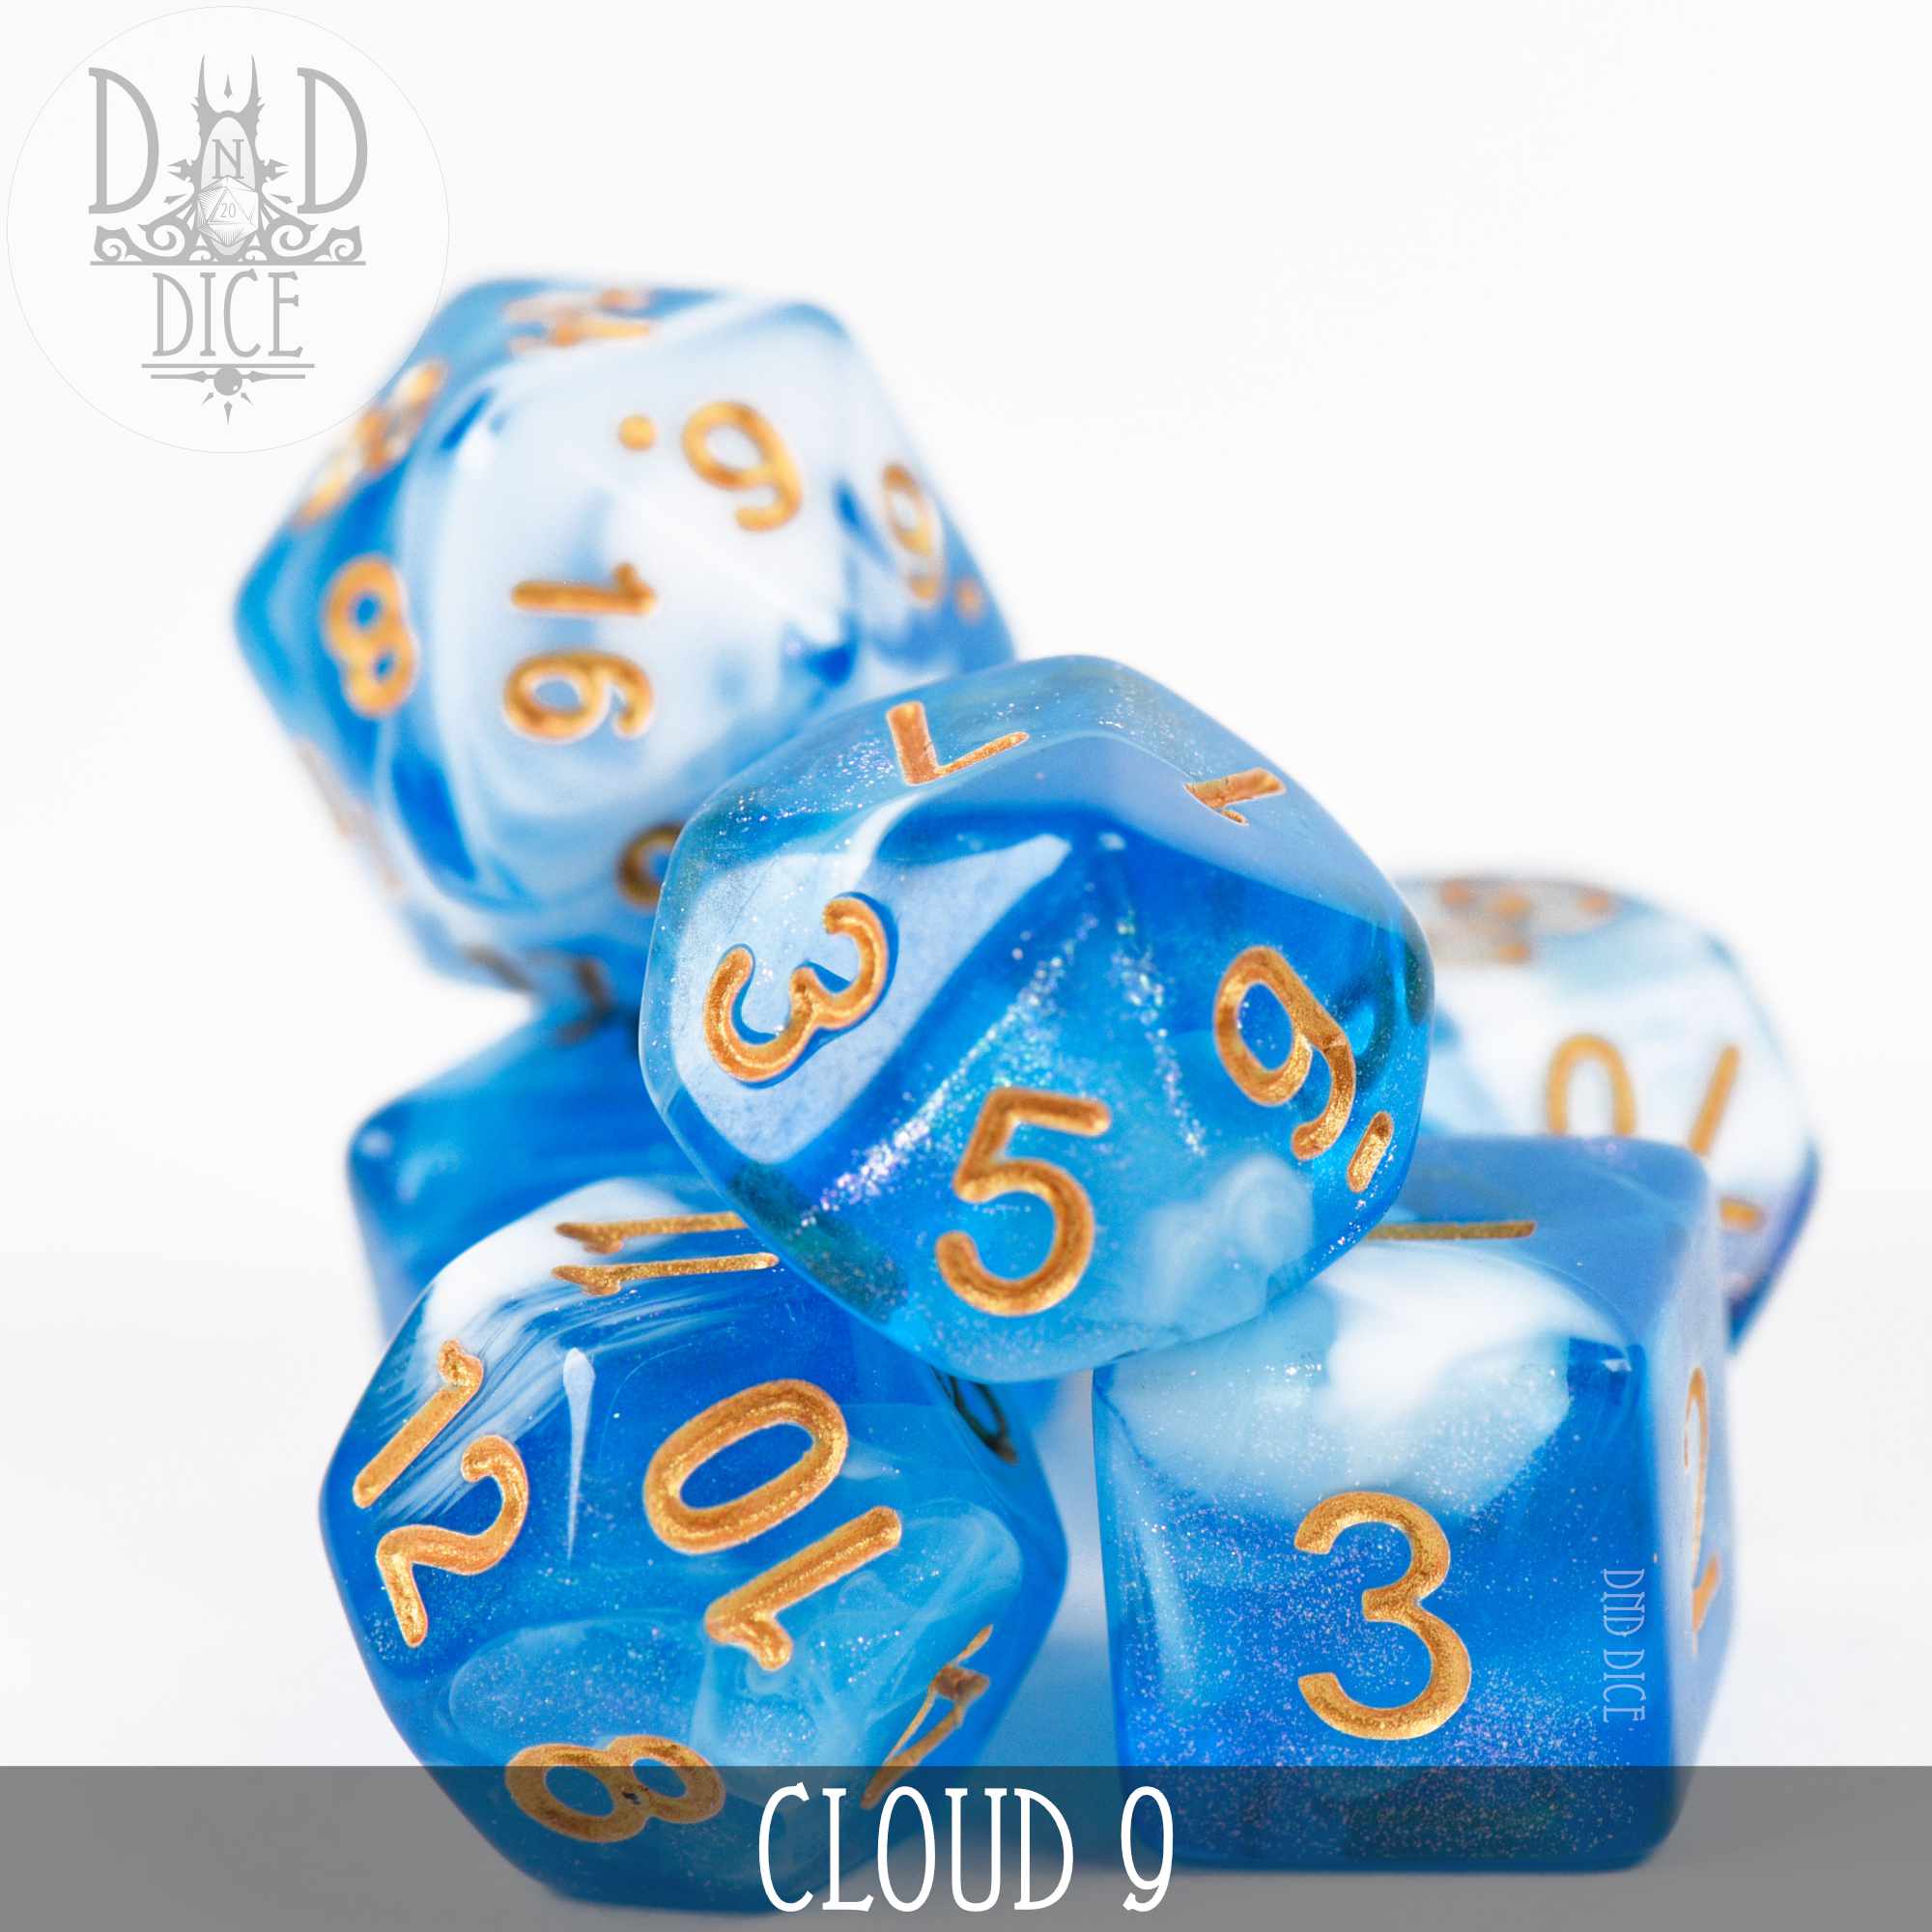 Cloud 9 Dice Set